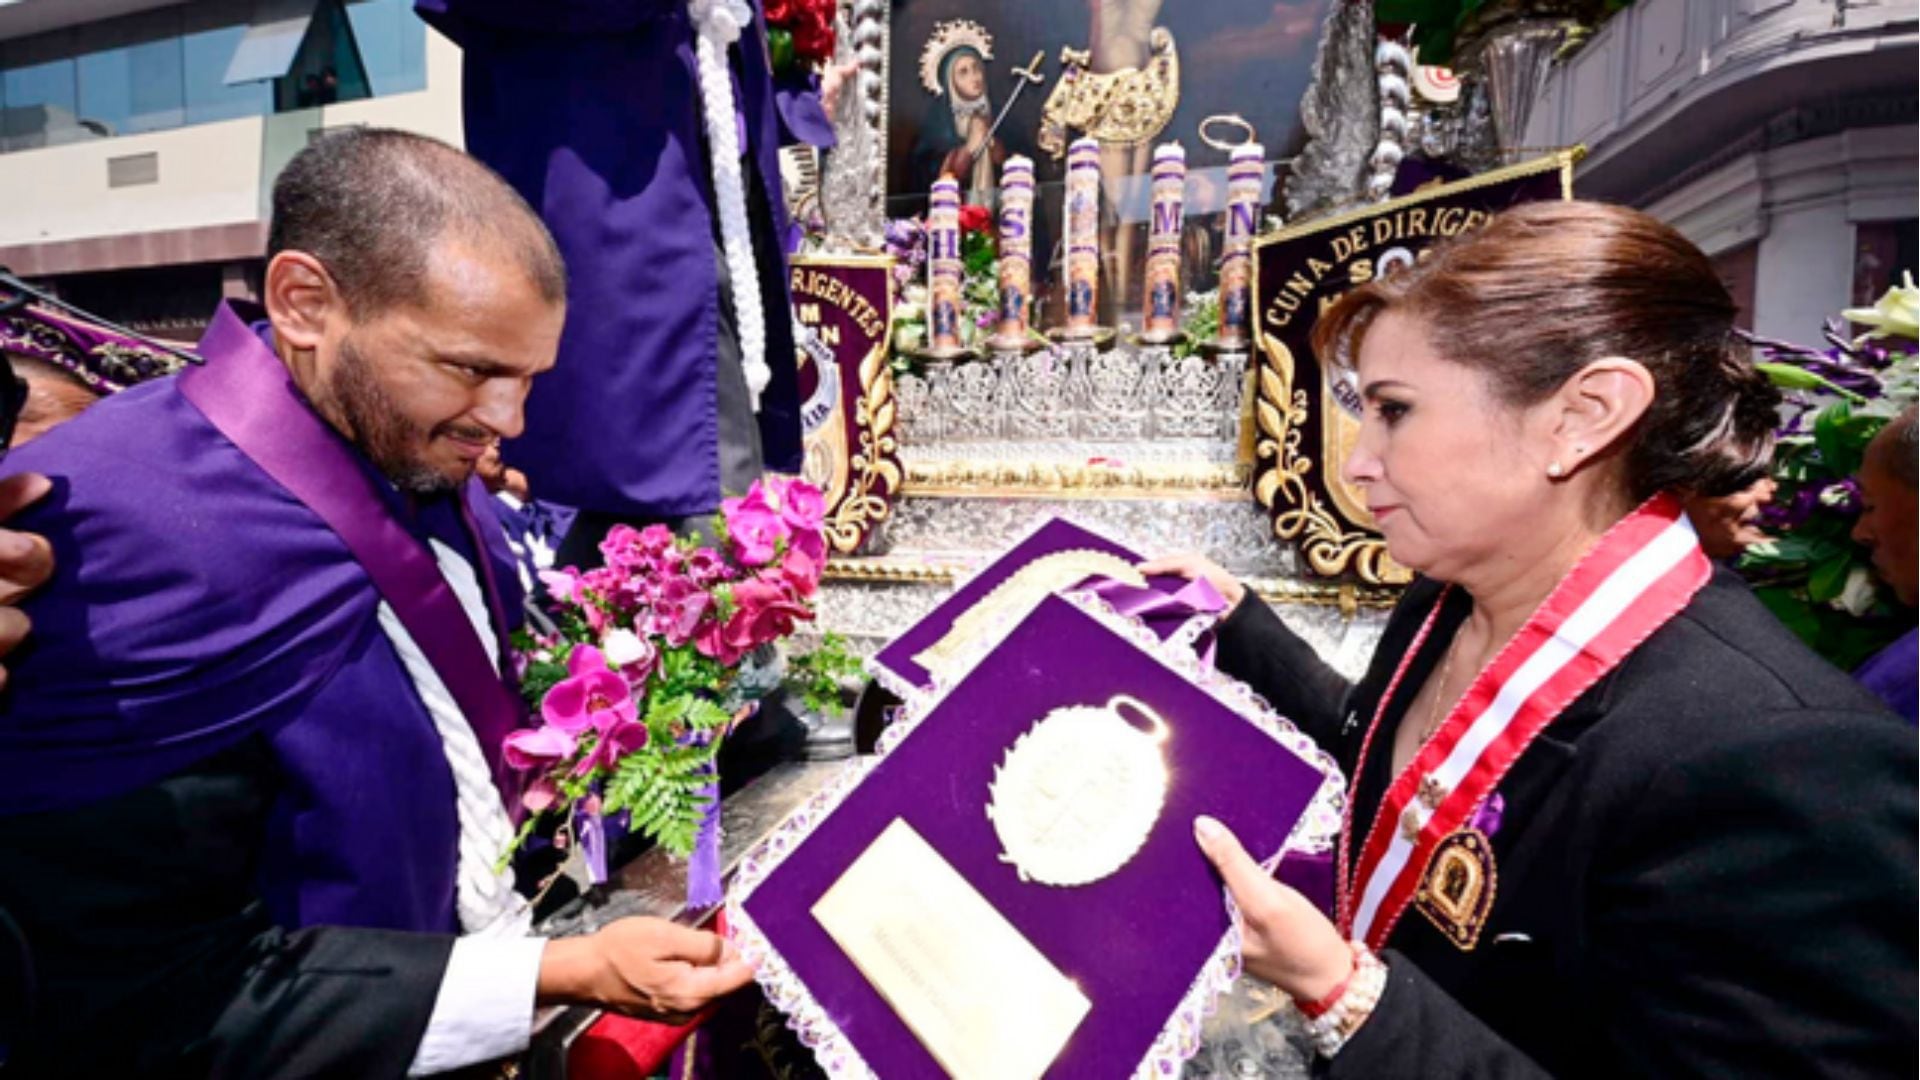 La fiscal de la Nación recibió y brindó un presente al Cristo Moreno| Fiscalía de la Nación